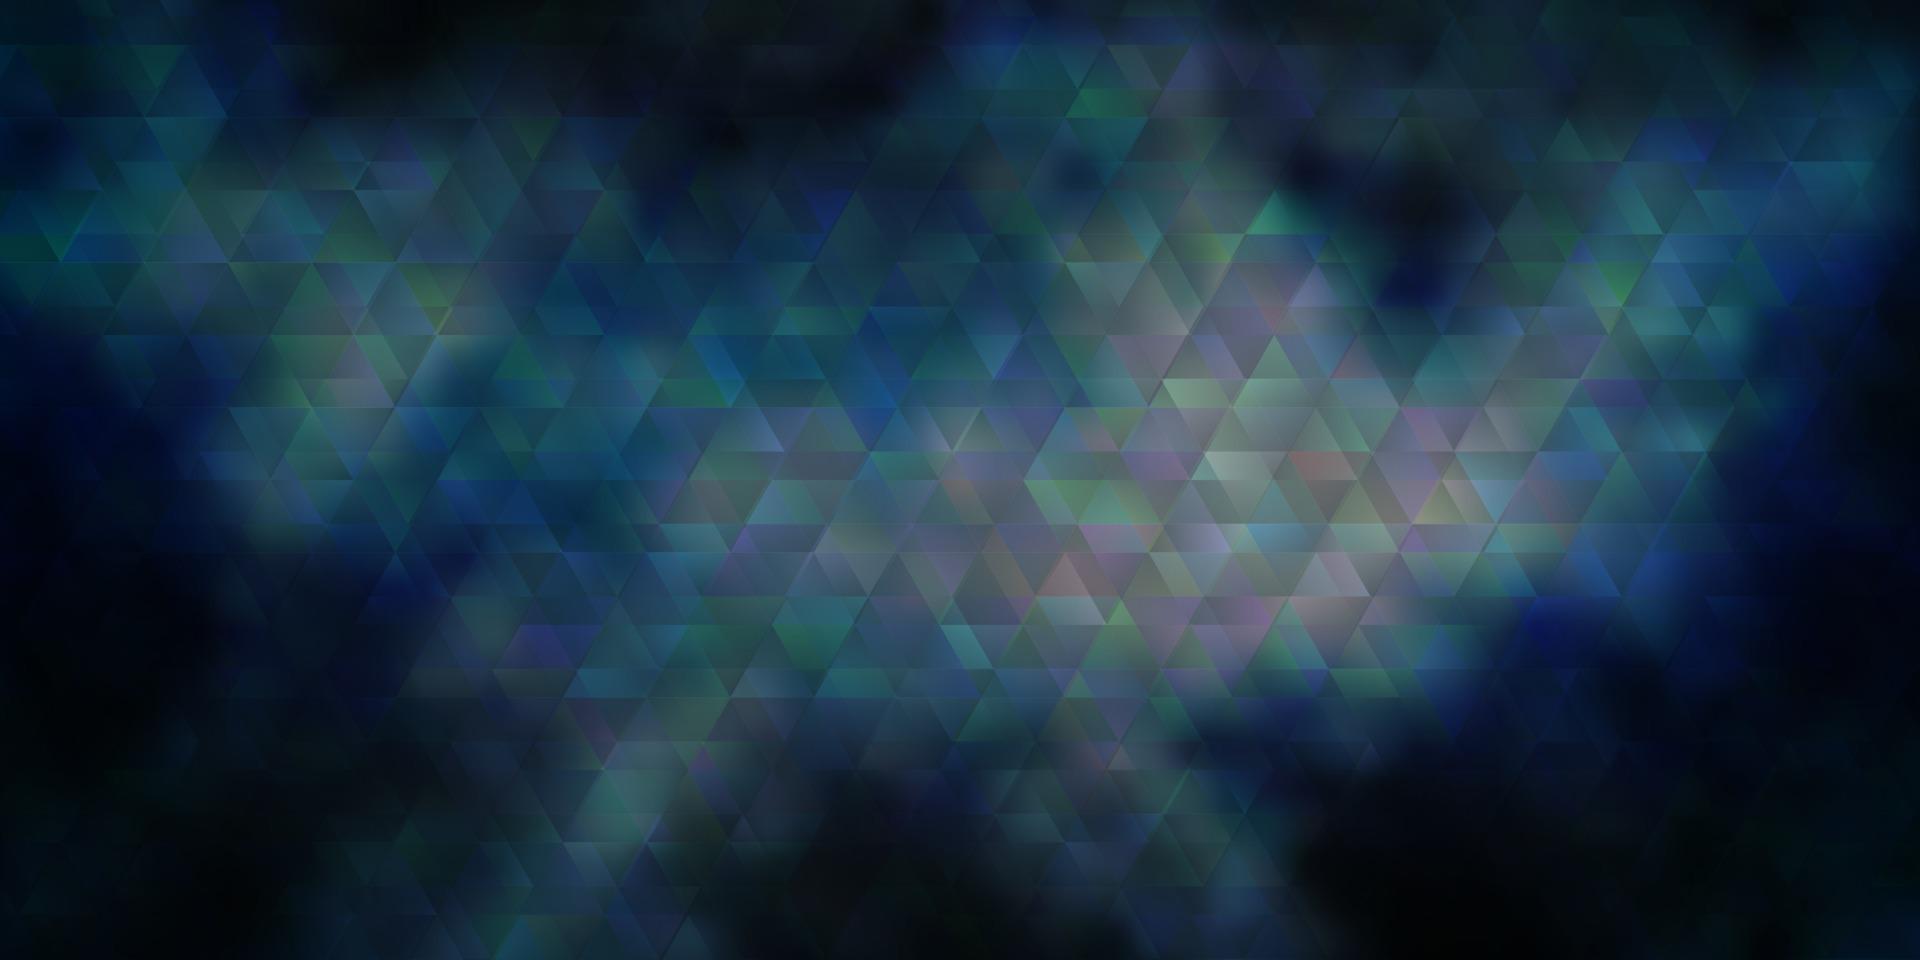 mörkblå vektorbakgrund med linjer, trianglar. vektor